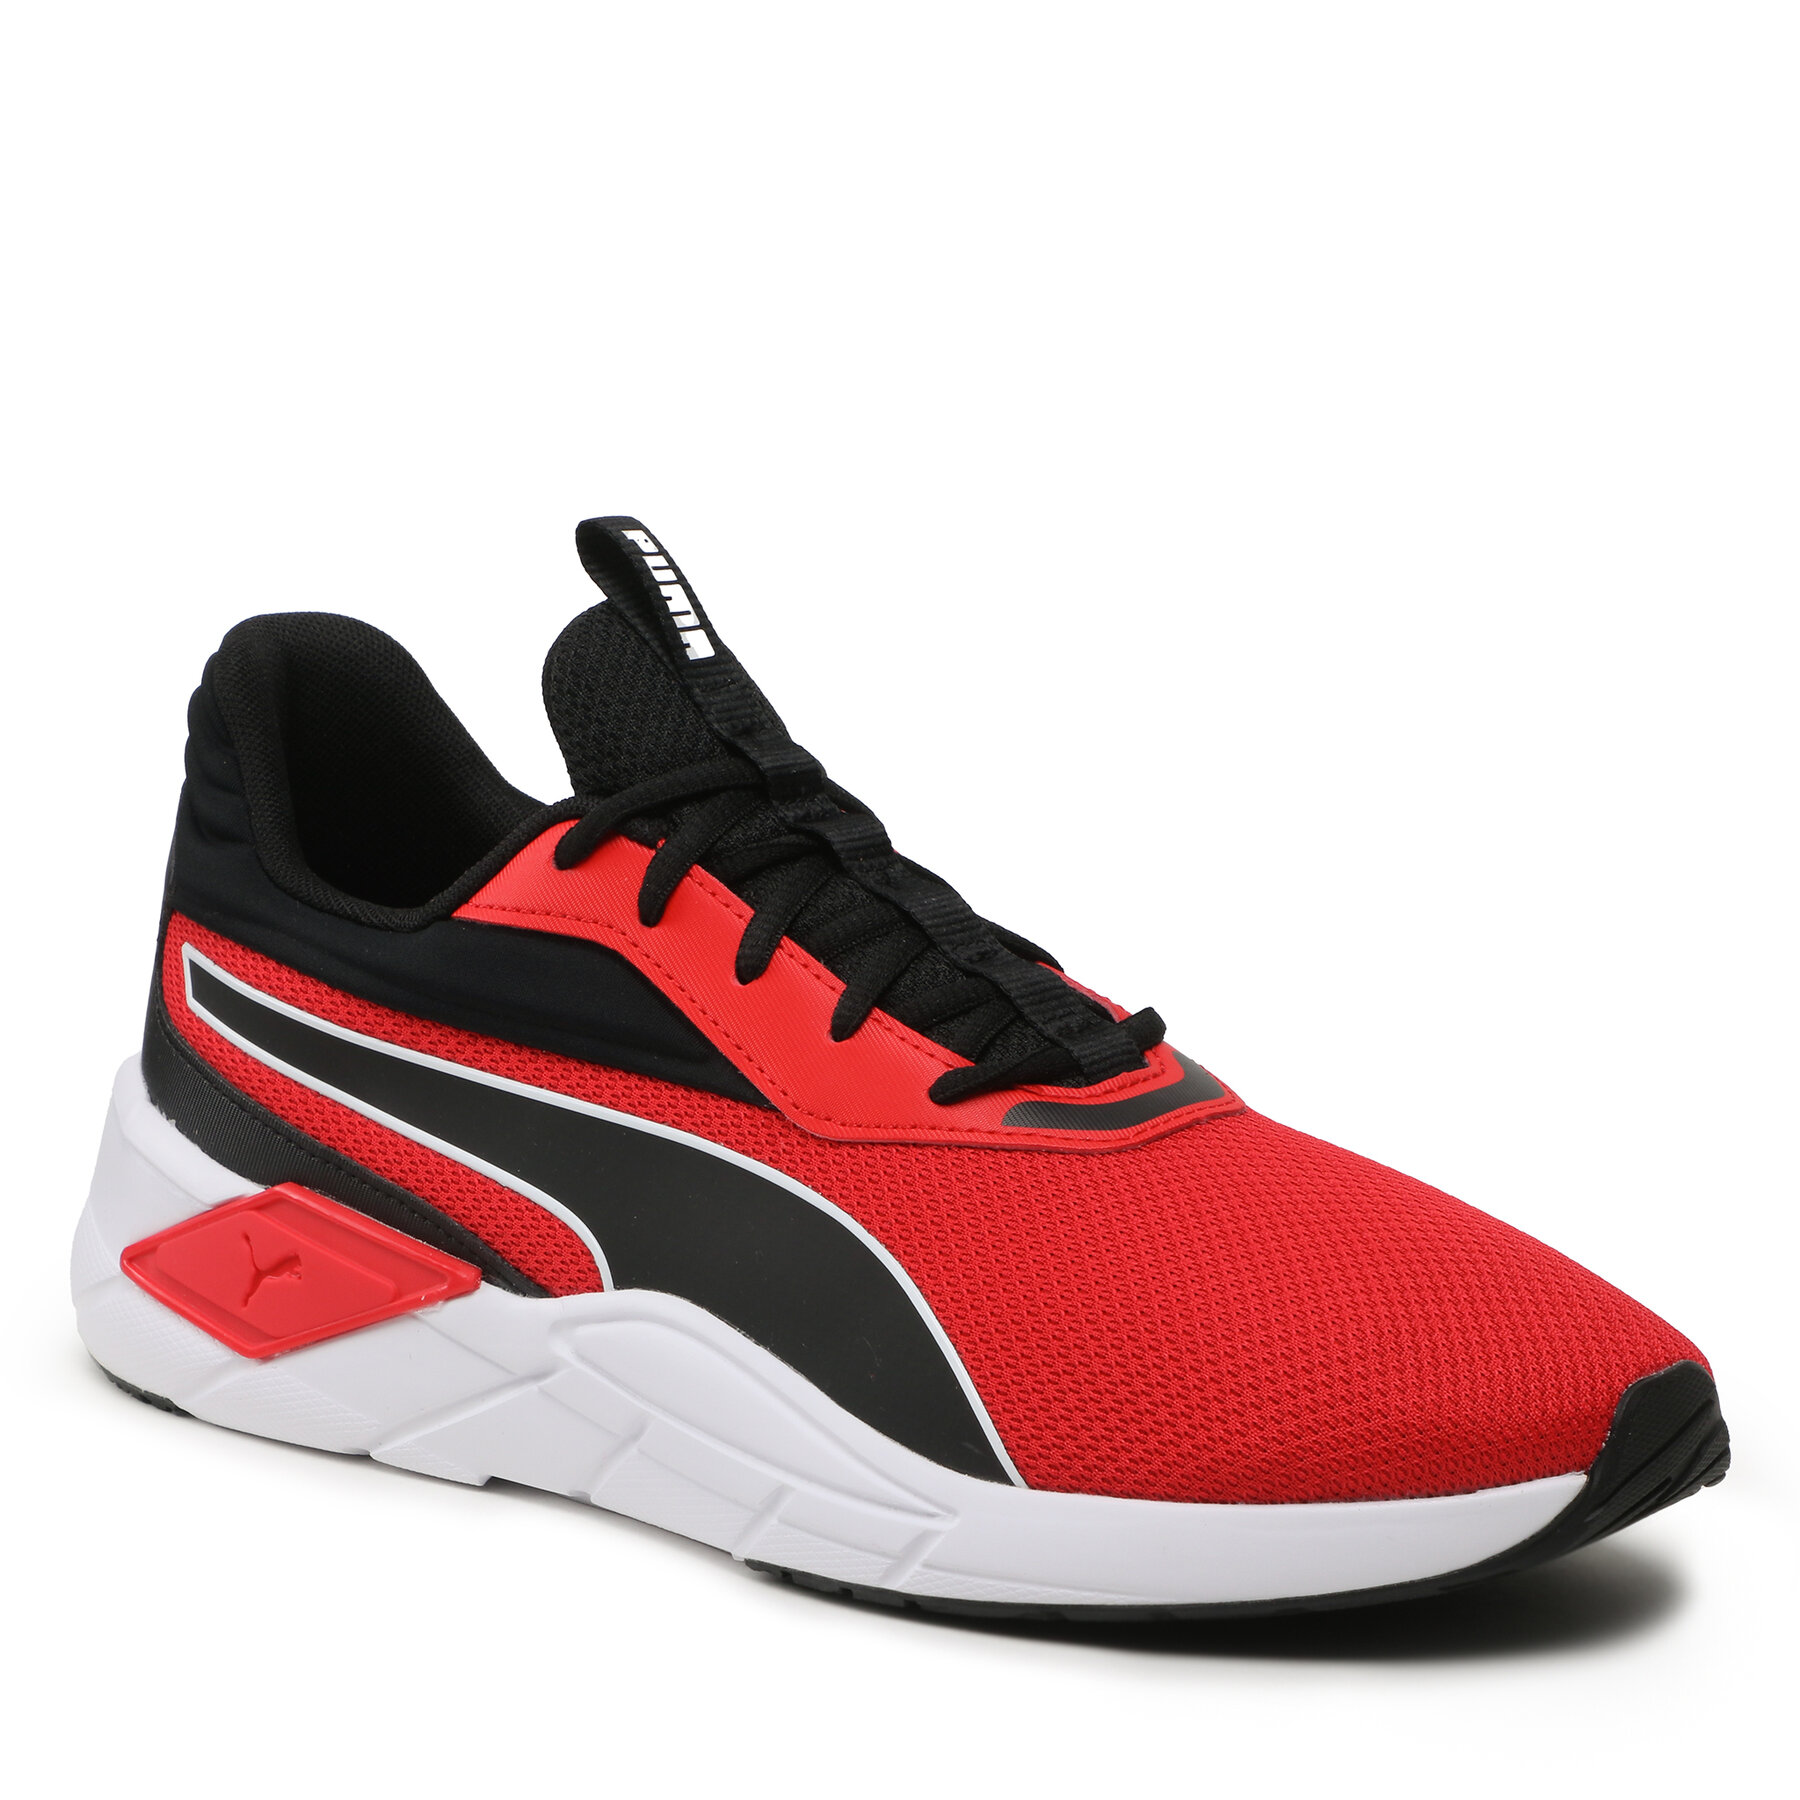 Pantofi Puma Lex 376826 12 For All Time Red/Black/White 376826 imagine noua